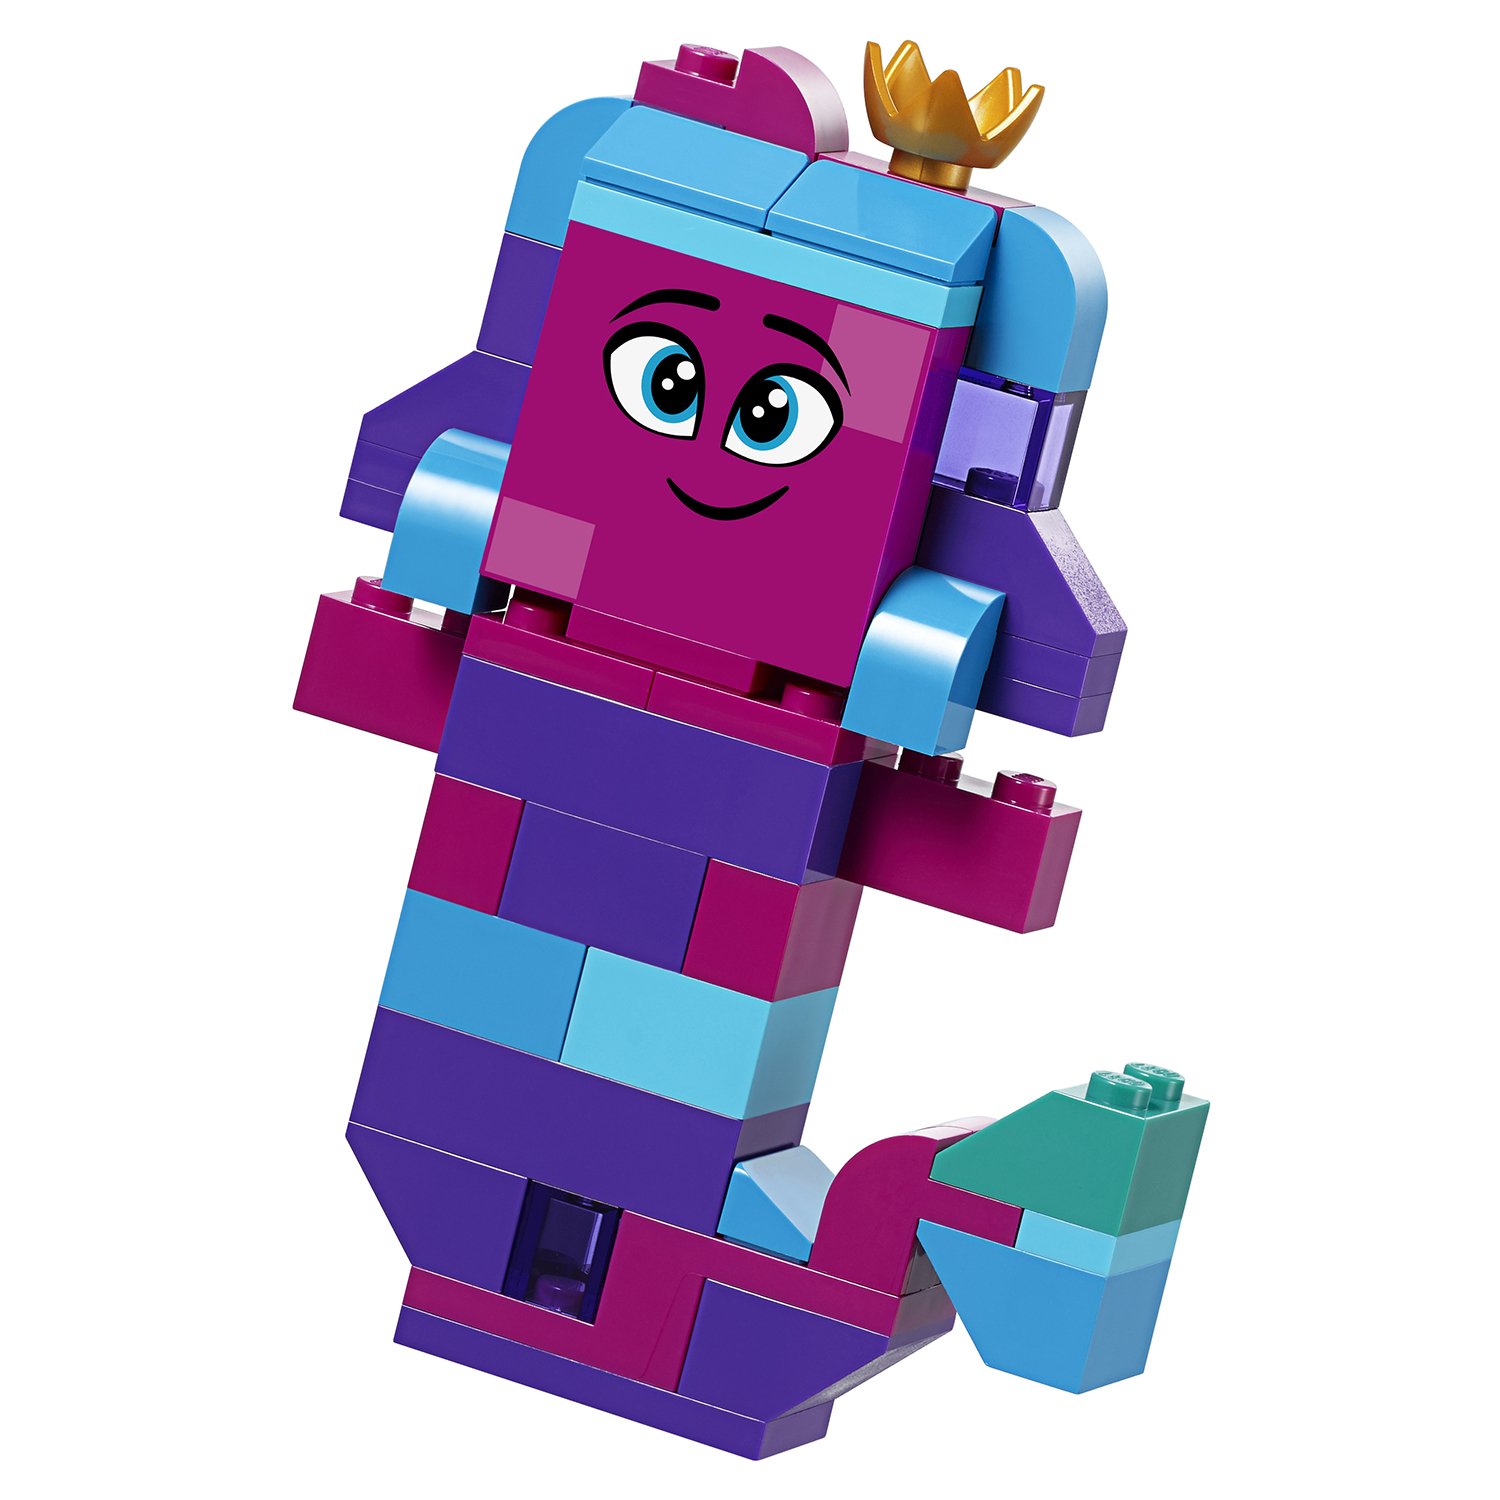 The LEGO Movie 2: Шкатулка королевы Многолики - Собери что хочешь  